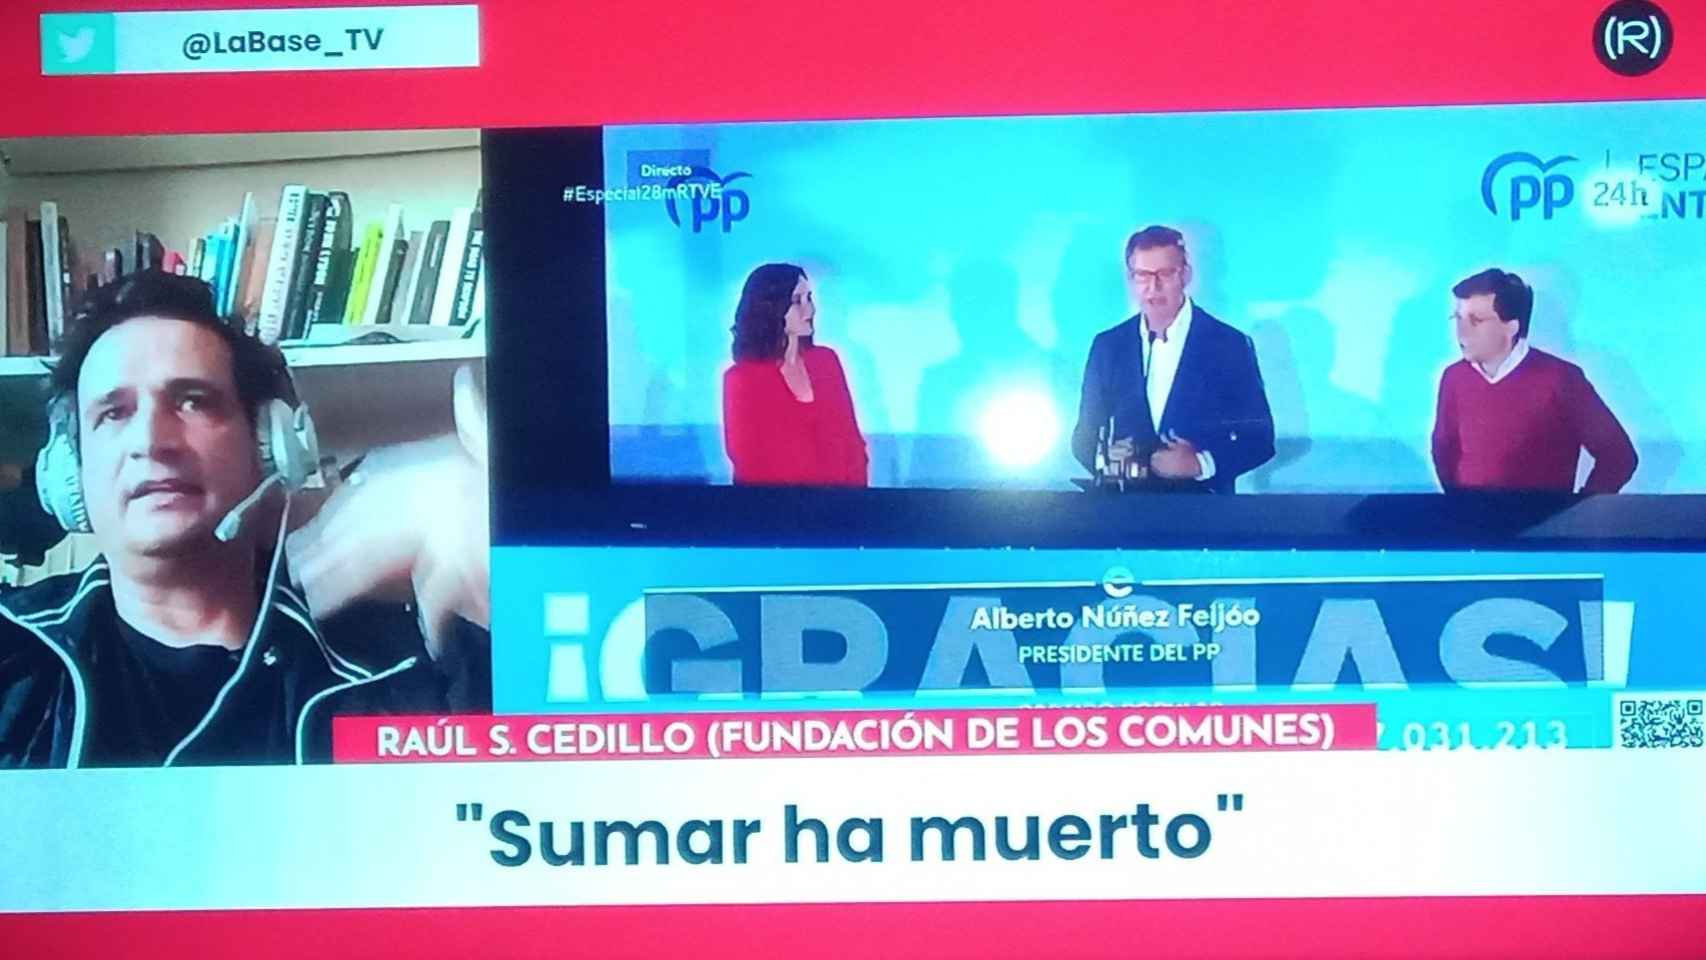 Sumar ha muerto, sentenció la televisión de Pablo Iglesias al hacer balance de las elecciones del 28-M.